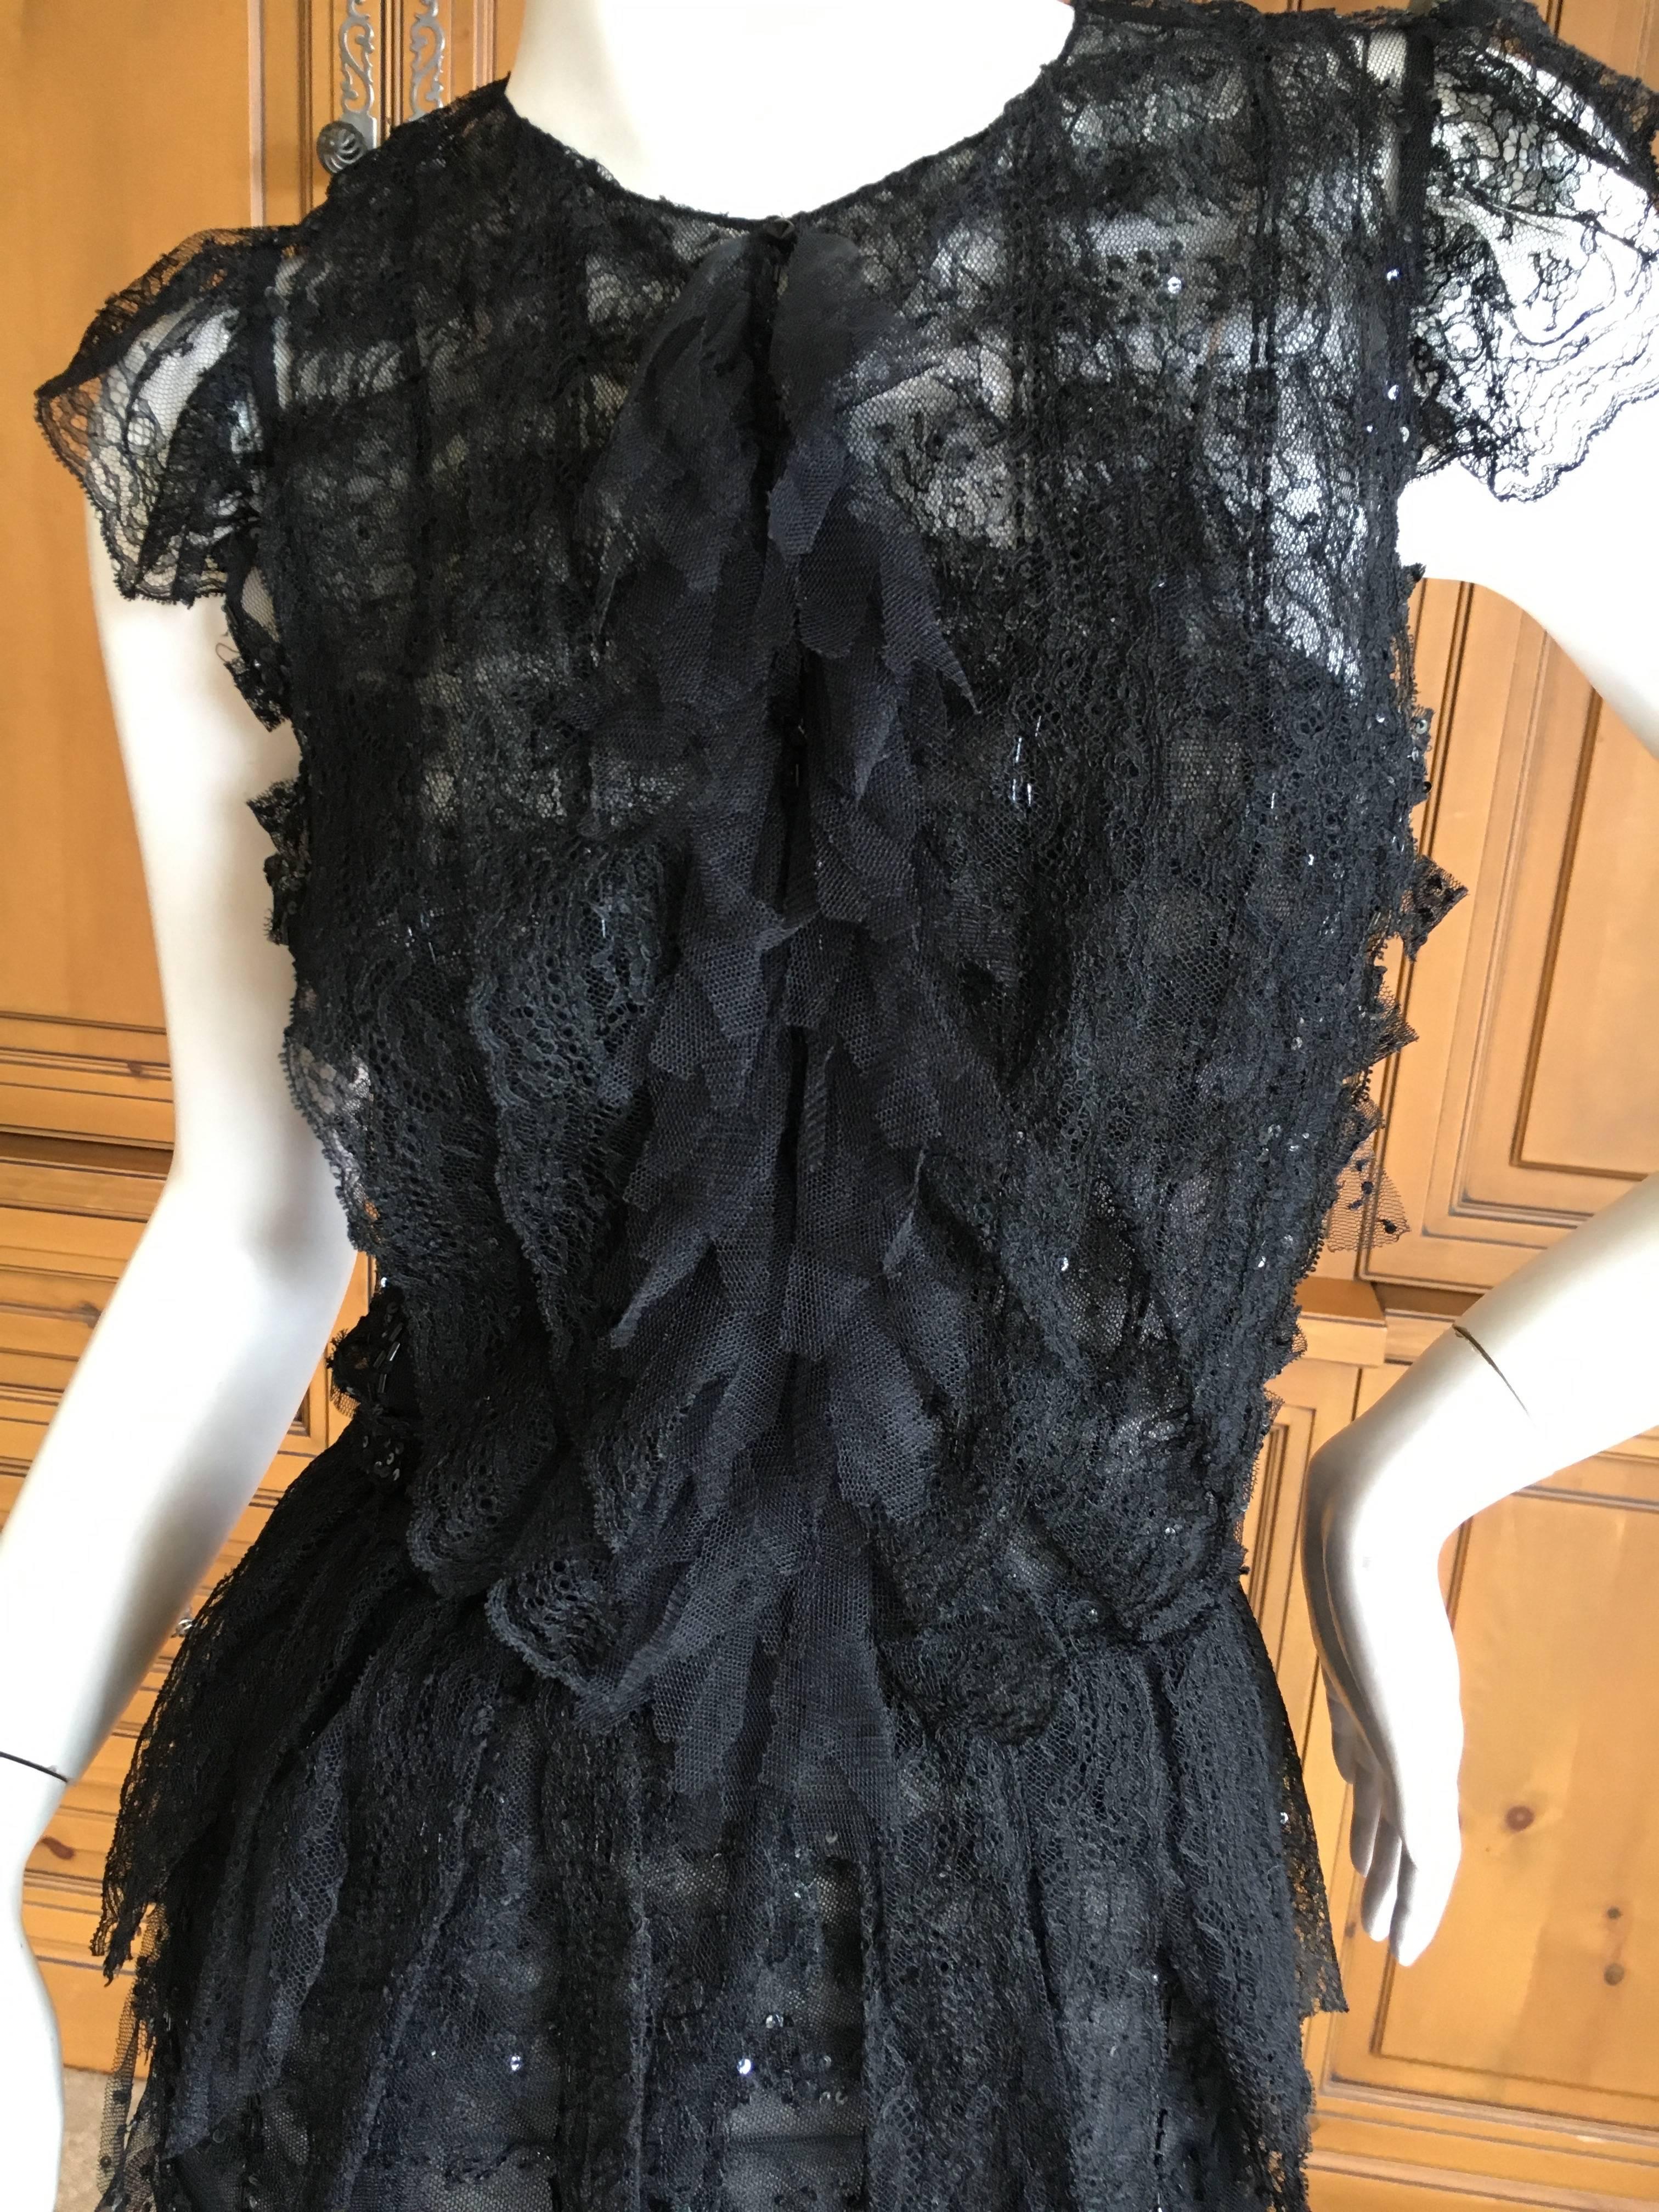 Oscar de la Renta Sheer Black Bugle Bead Embellished Cocktail Dress with Slip For Sale 5